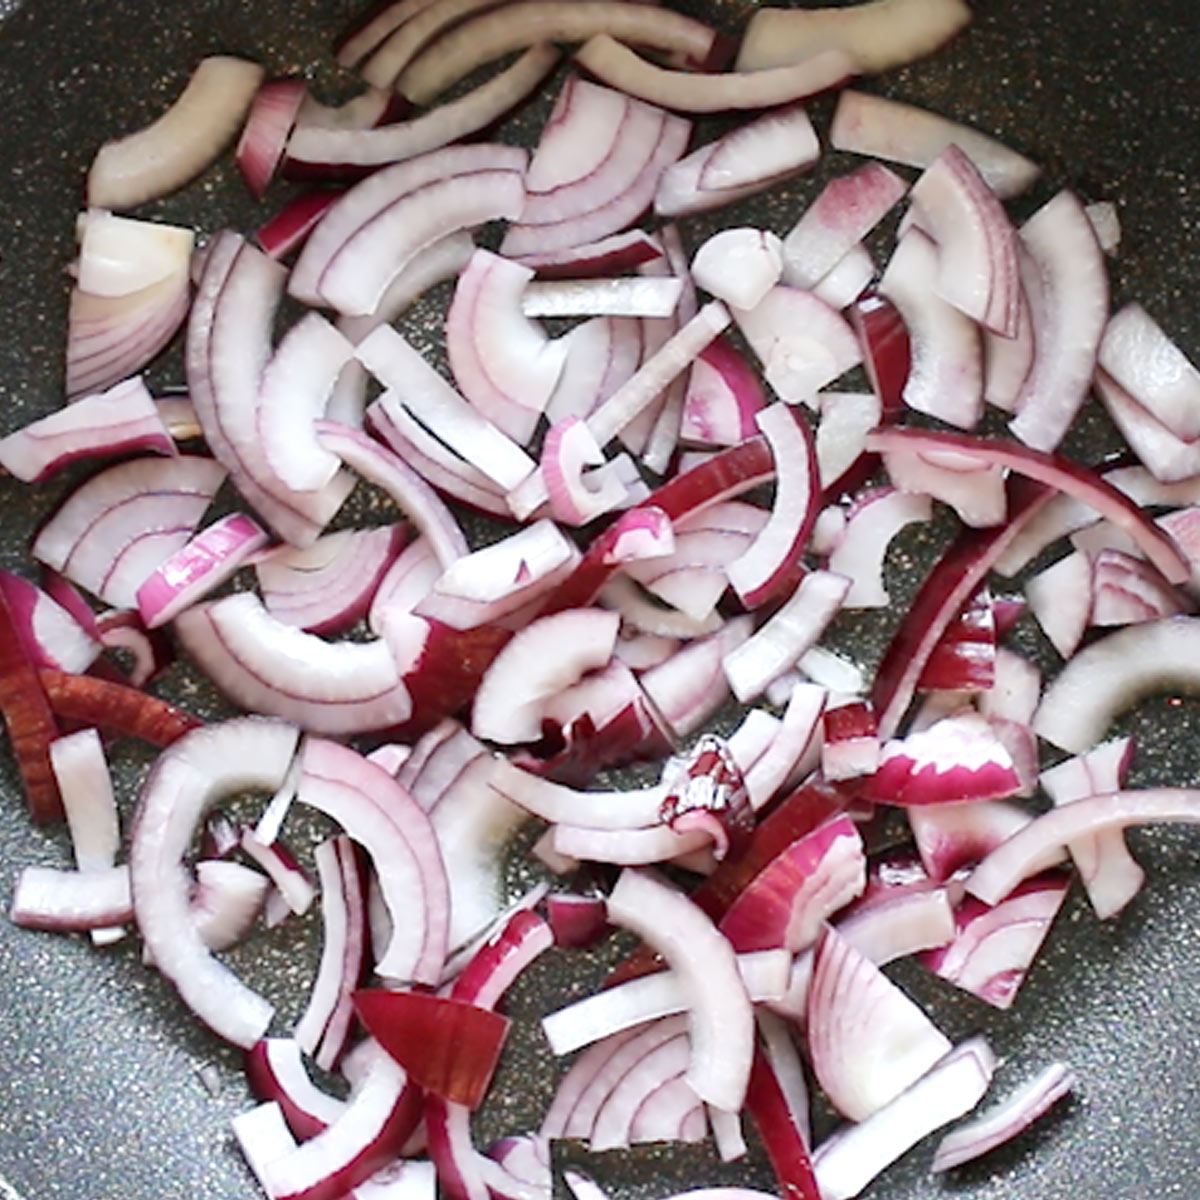 sauté red onion slices